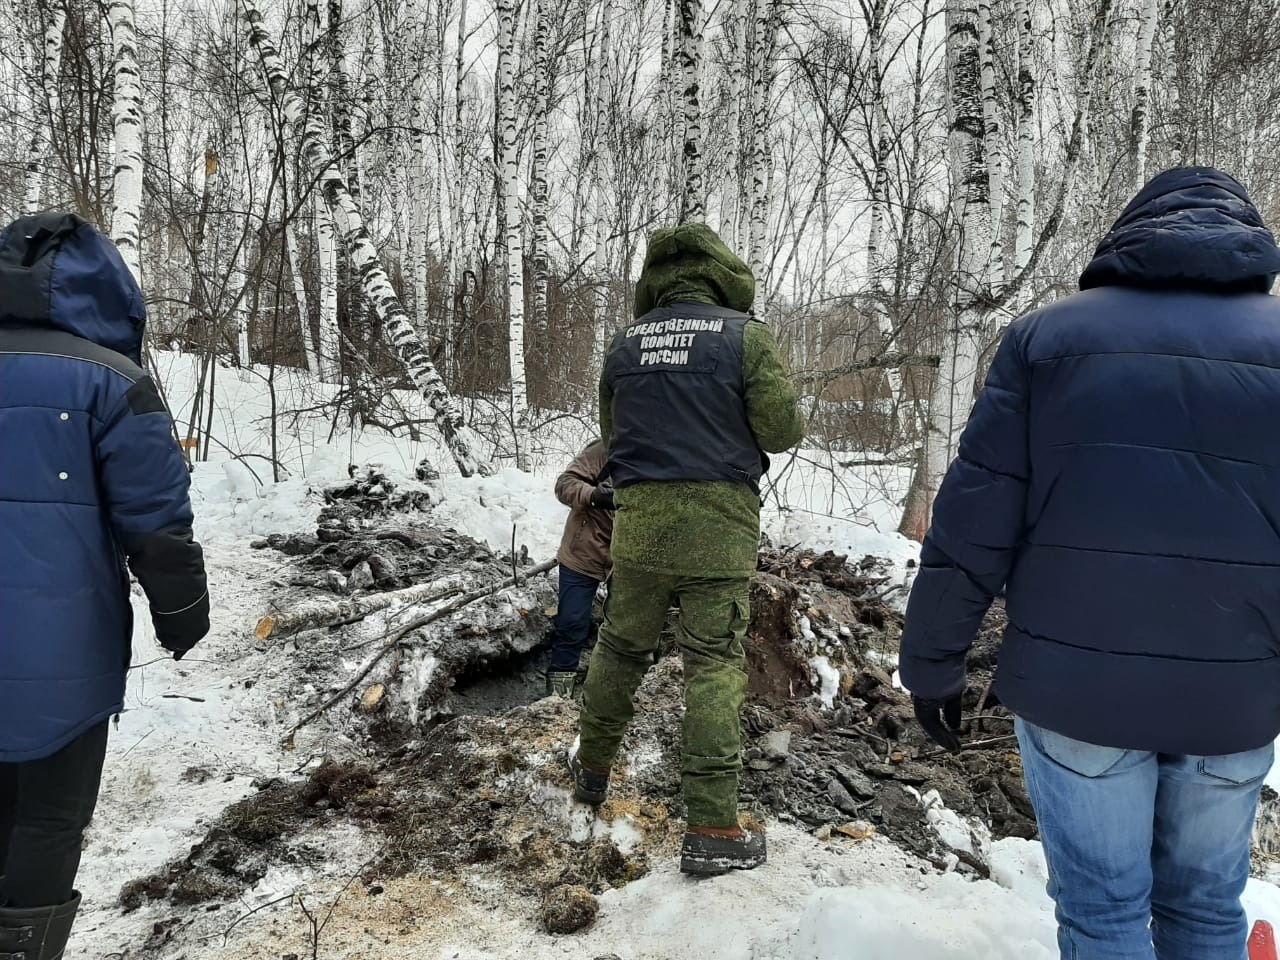 Уголовное дело об убийстве расследуют в Красноярском крае в связи с исчезновением 6-летней девочки